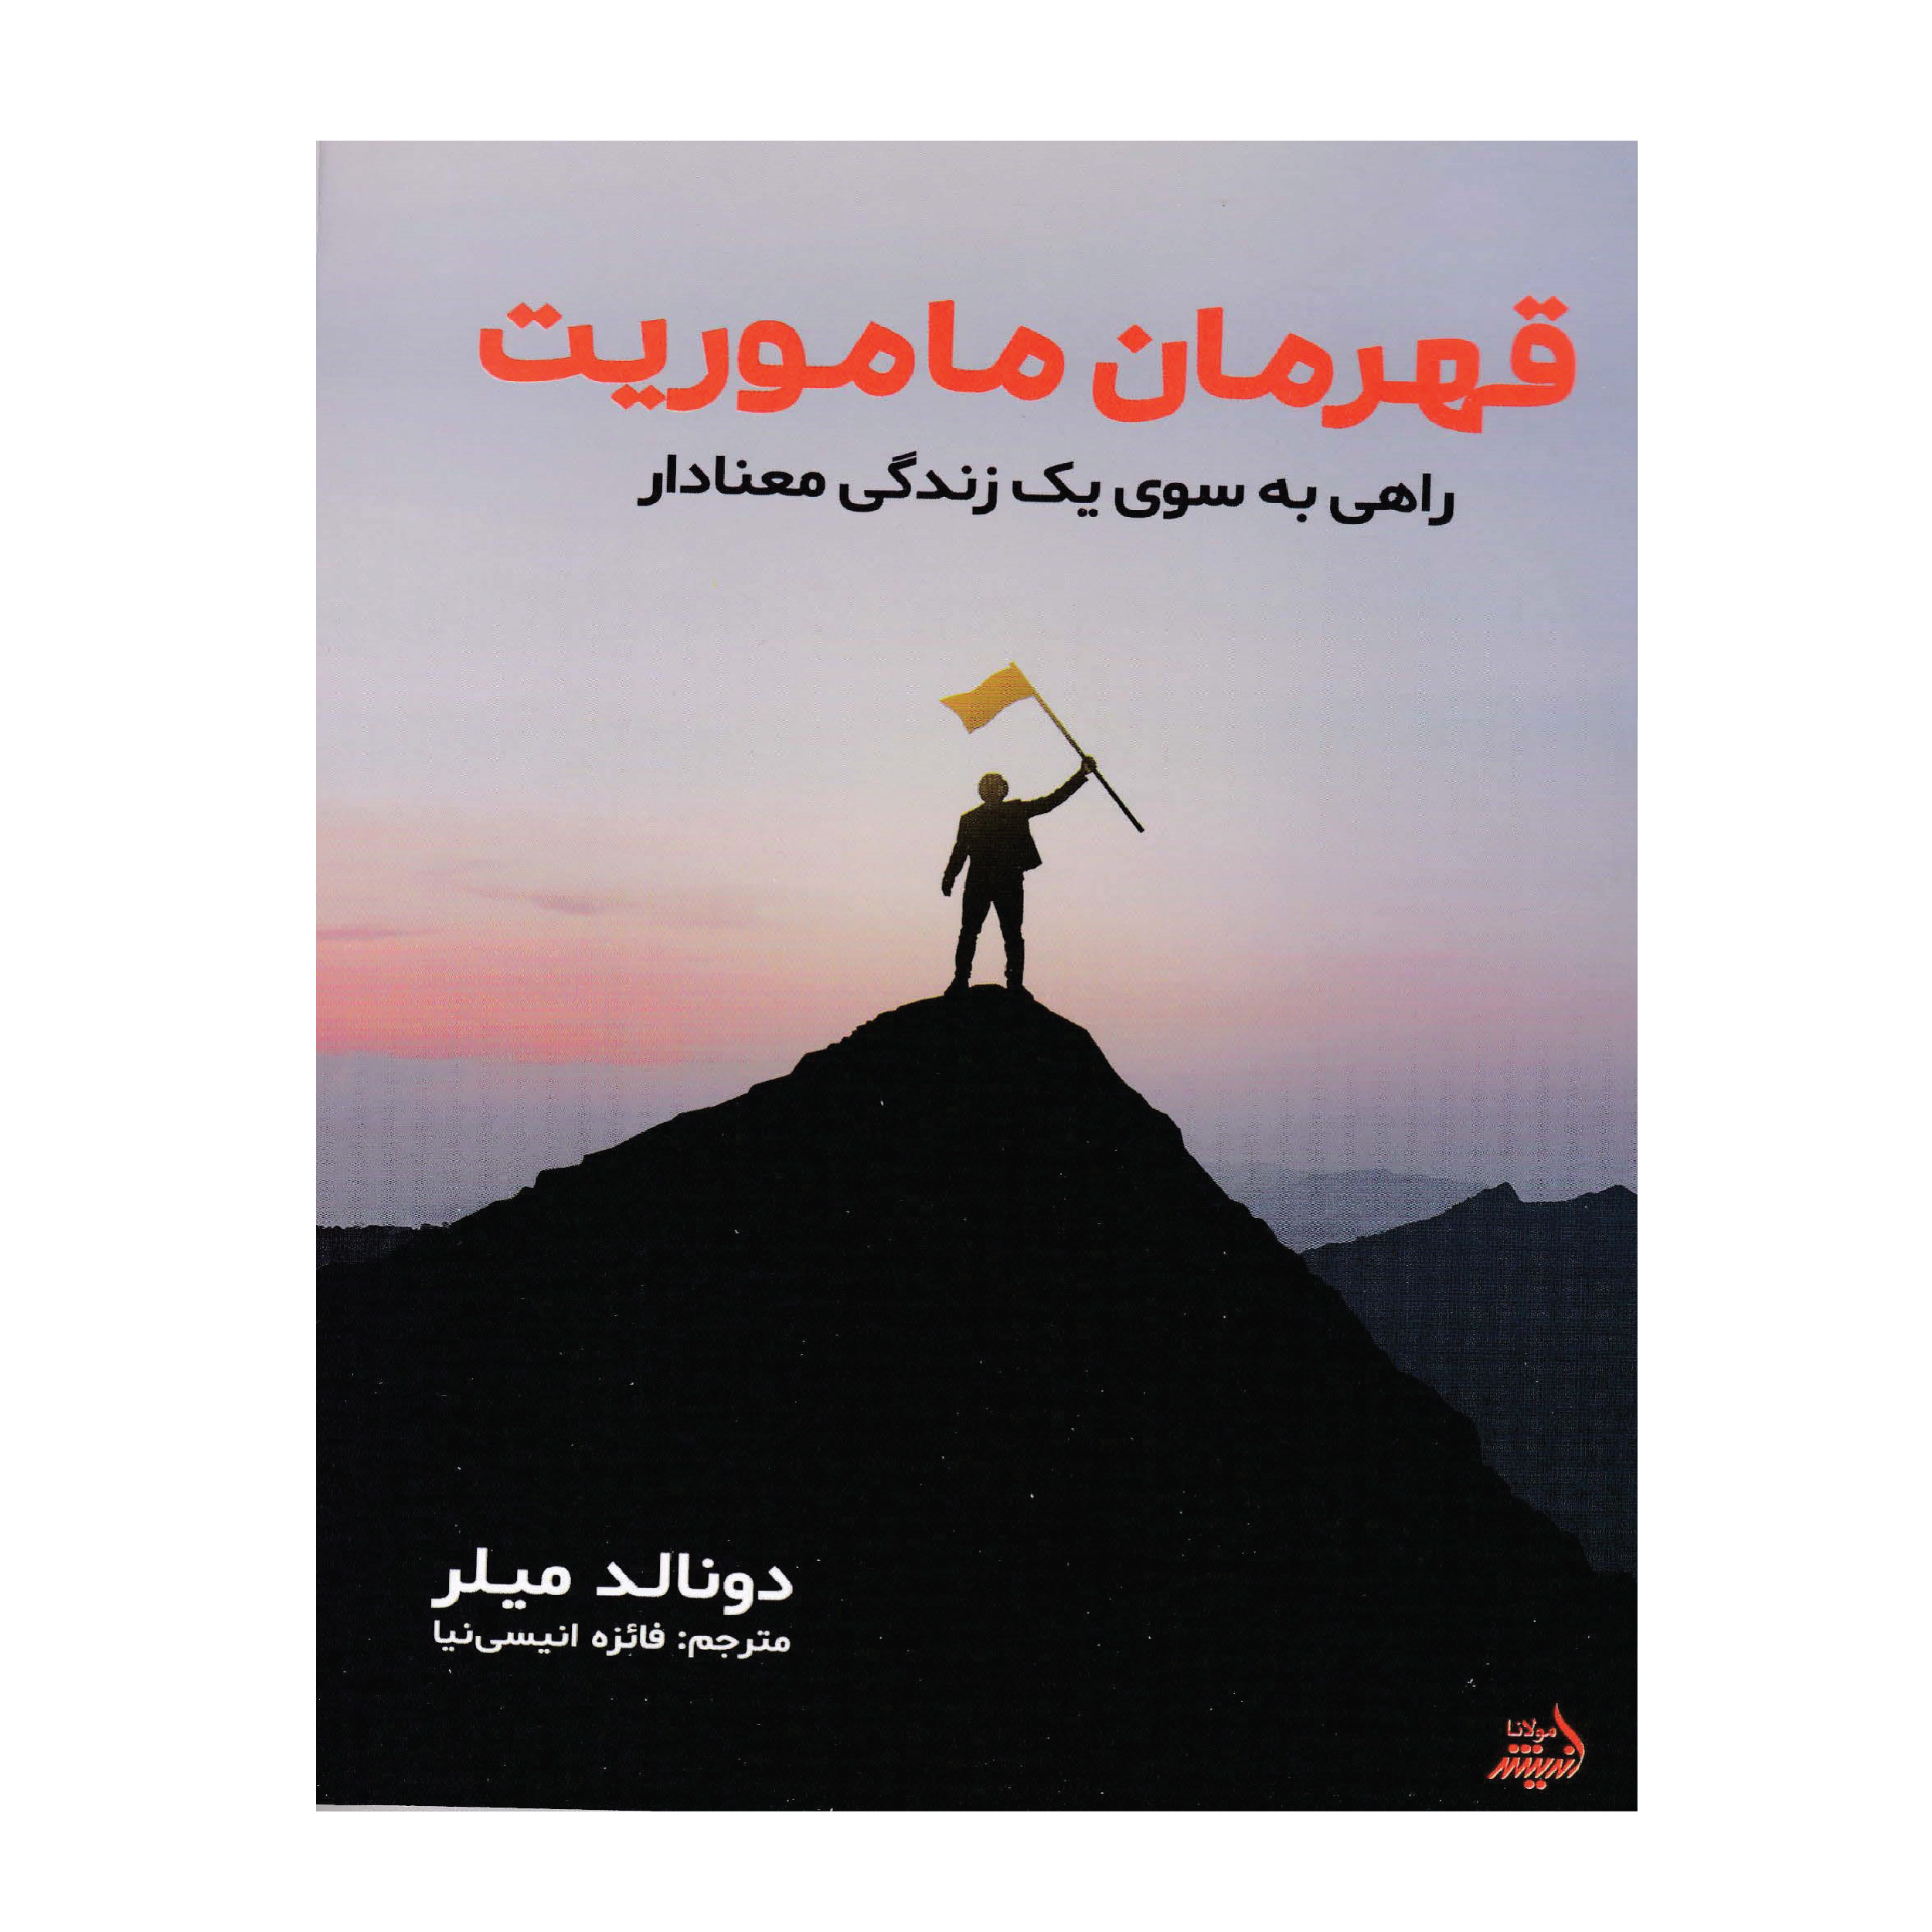 کتاب قهرمان ماموریت اثر دونالد میلر انتشارات اندیشه مولانا